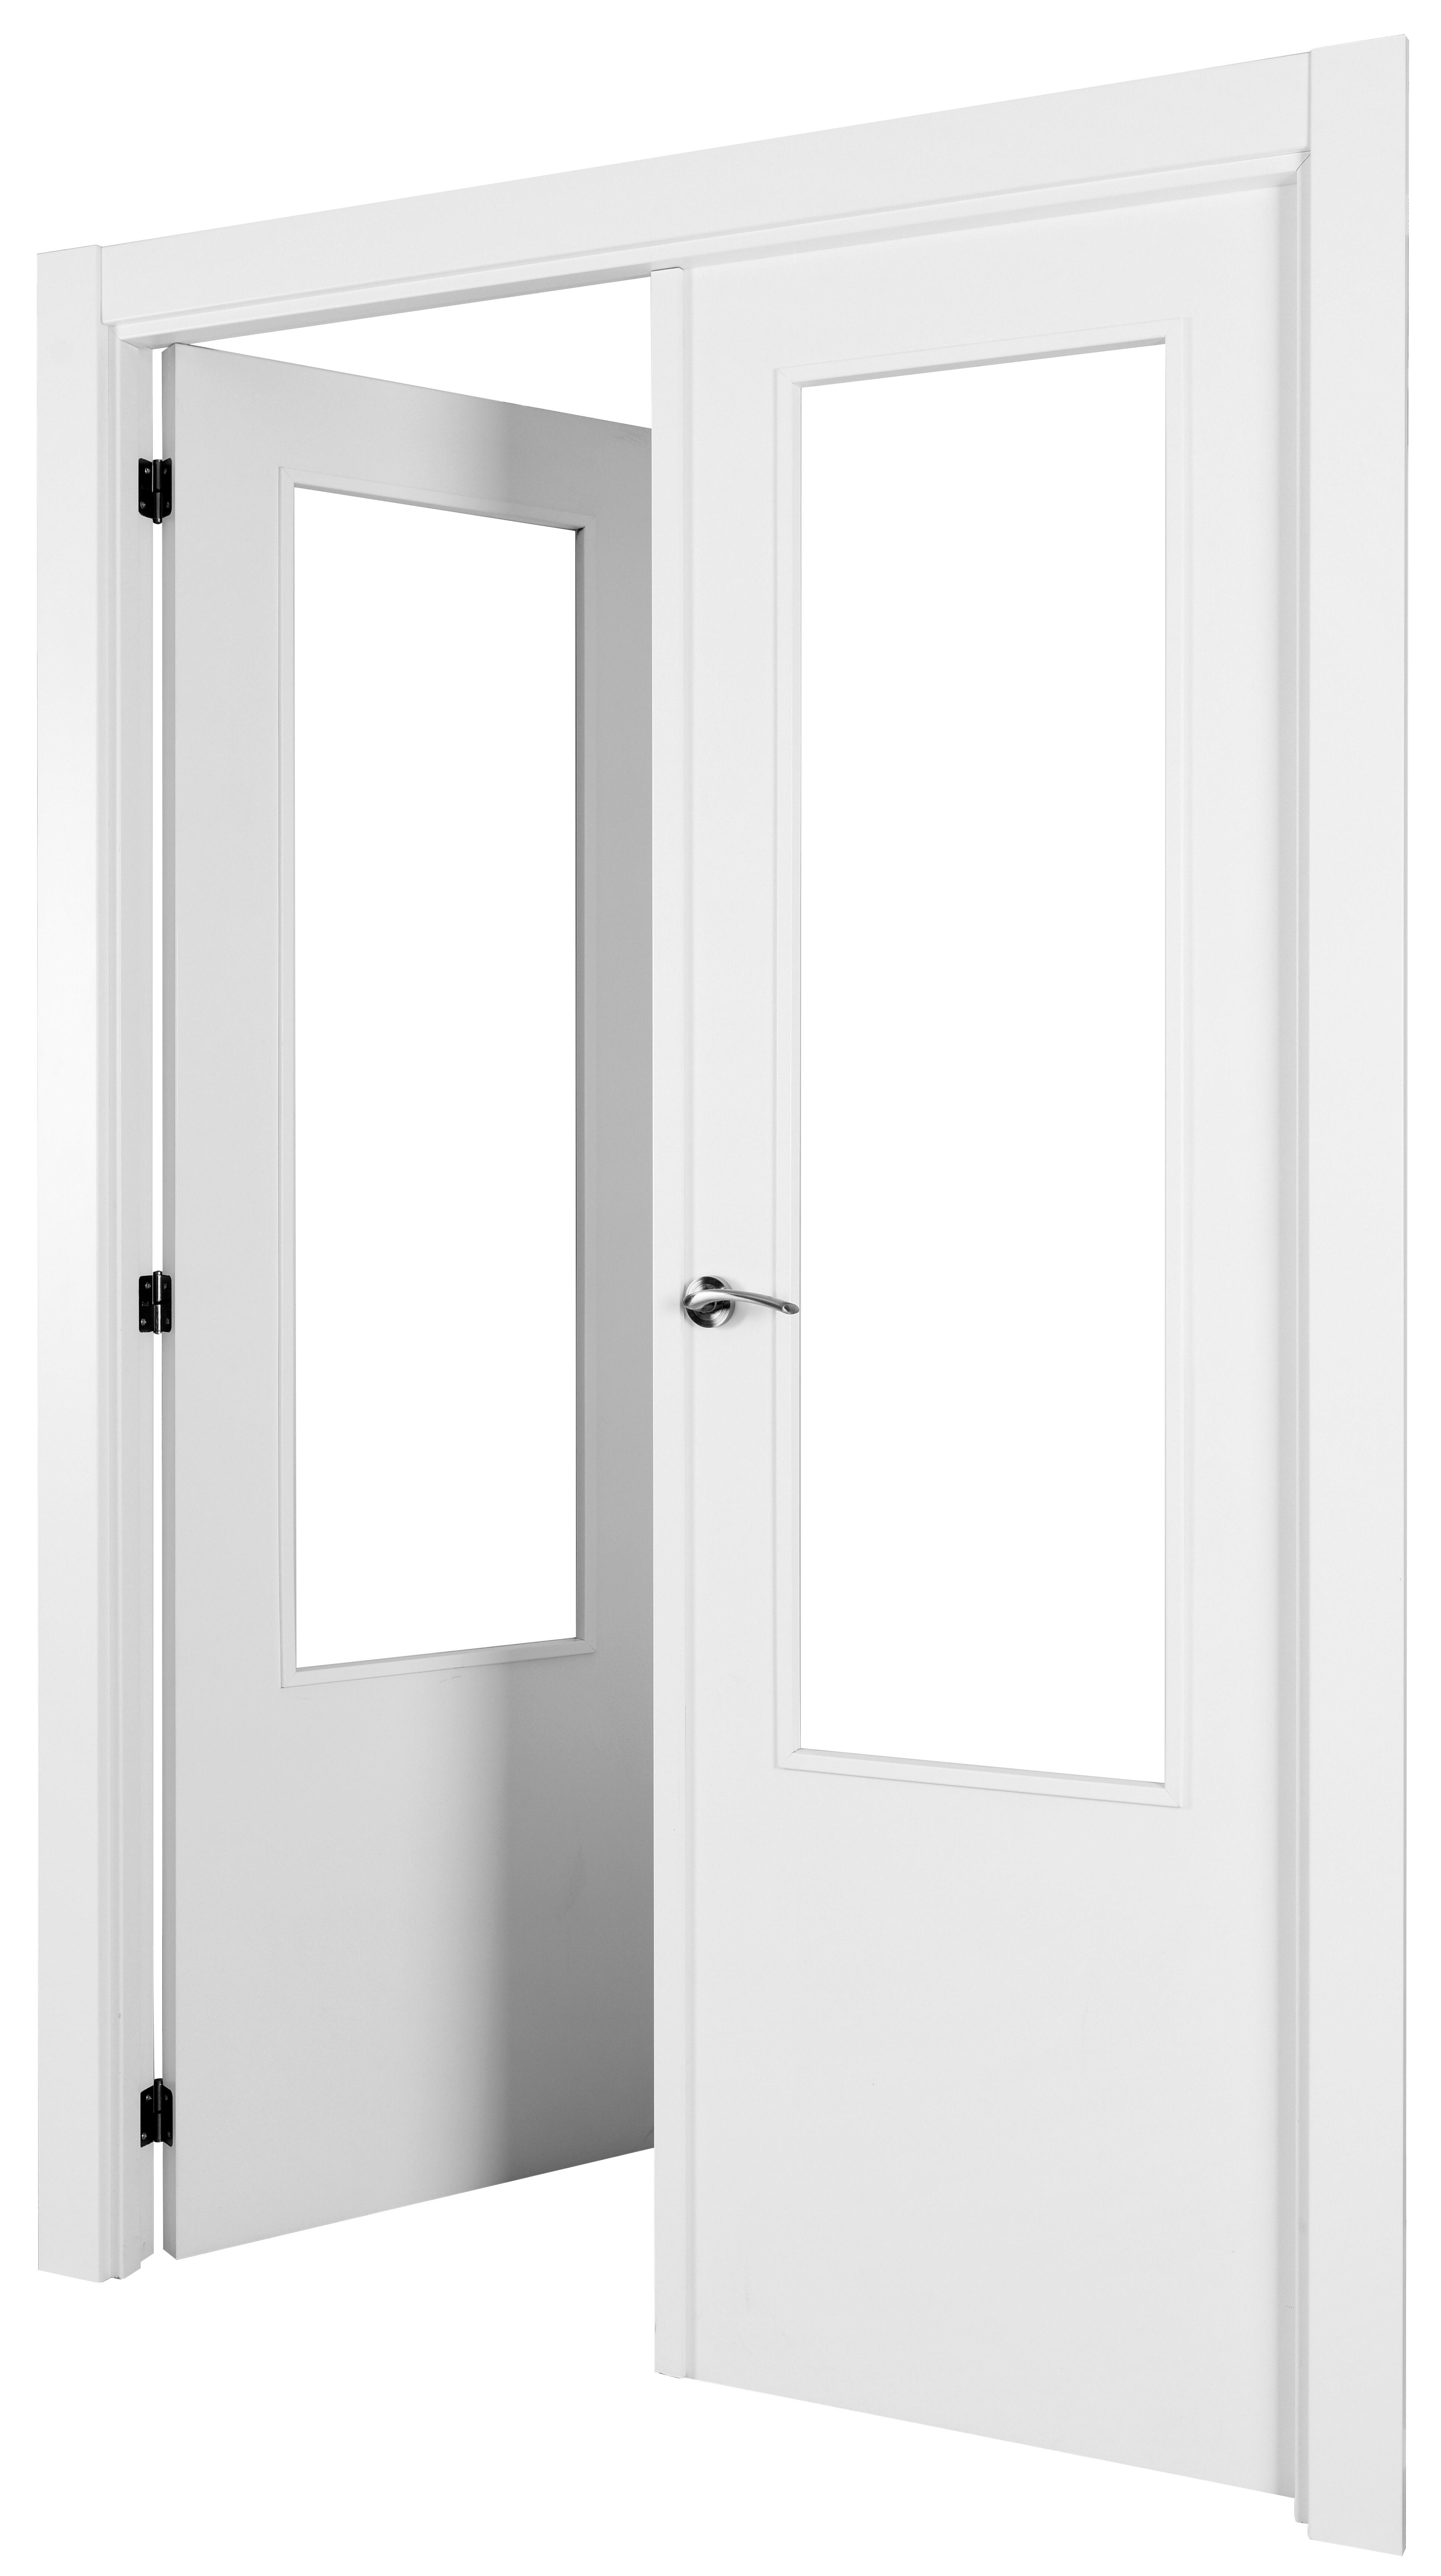 Puerta abatible lyon blanca aero blanco izquierda con cristal de 110x30 y 125cm